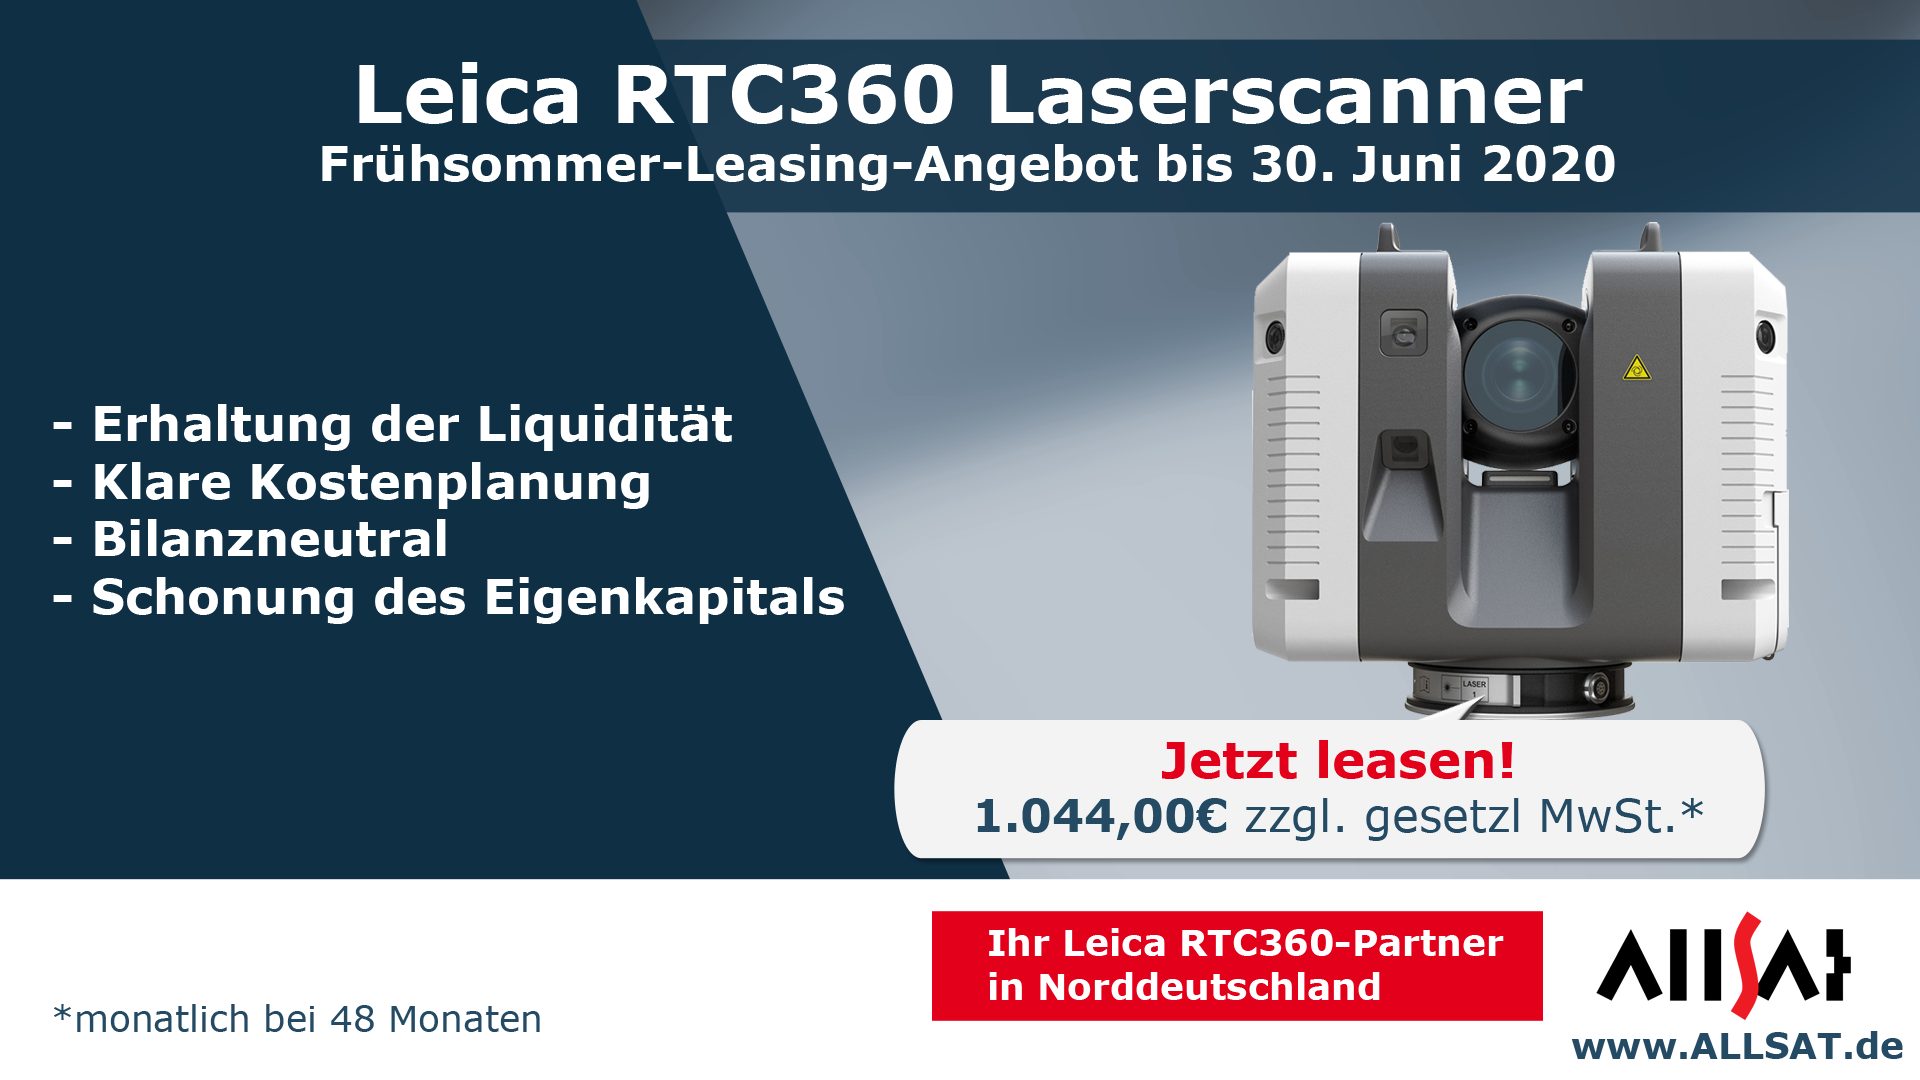 ALLSAT Laserscanner Leasing-Angebot